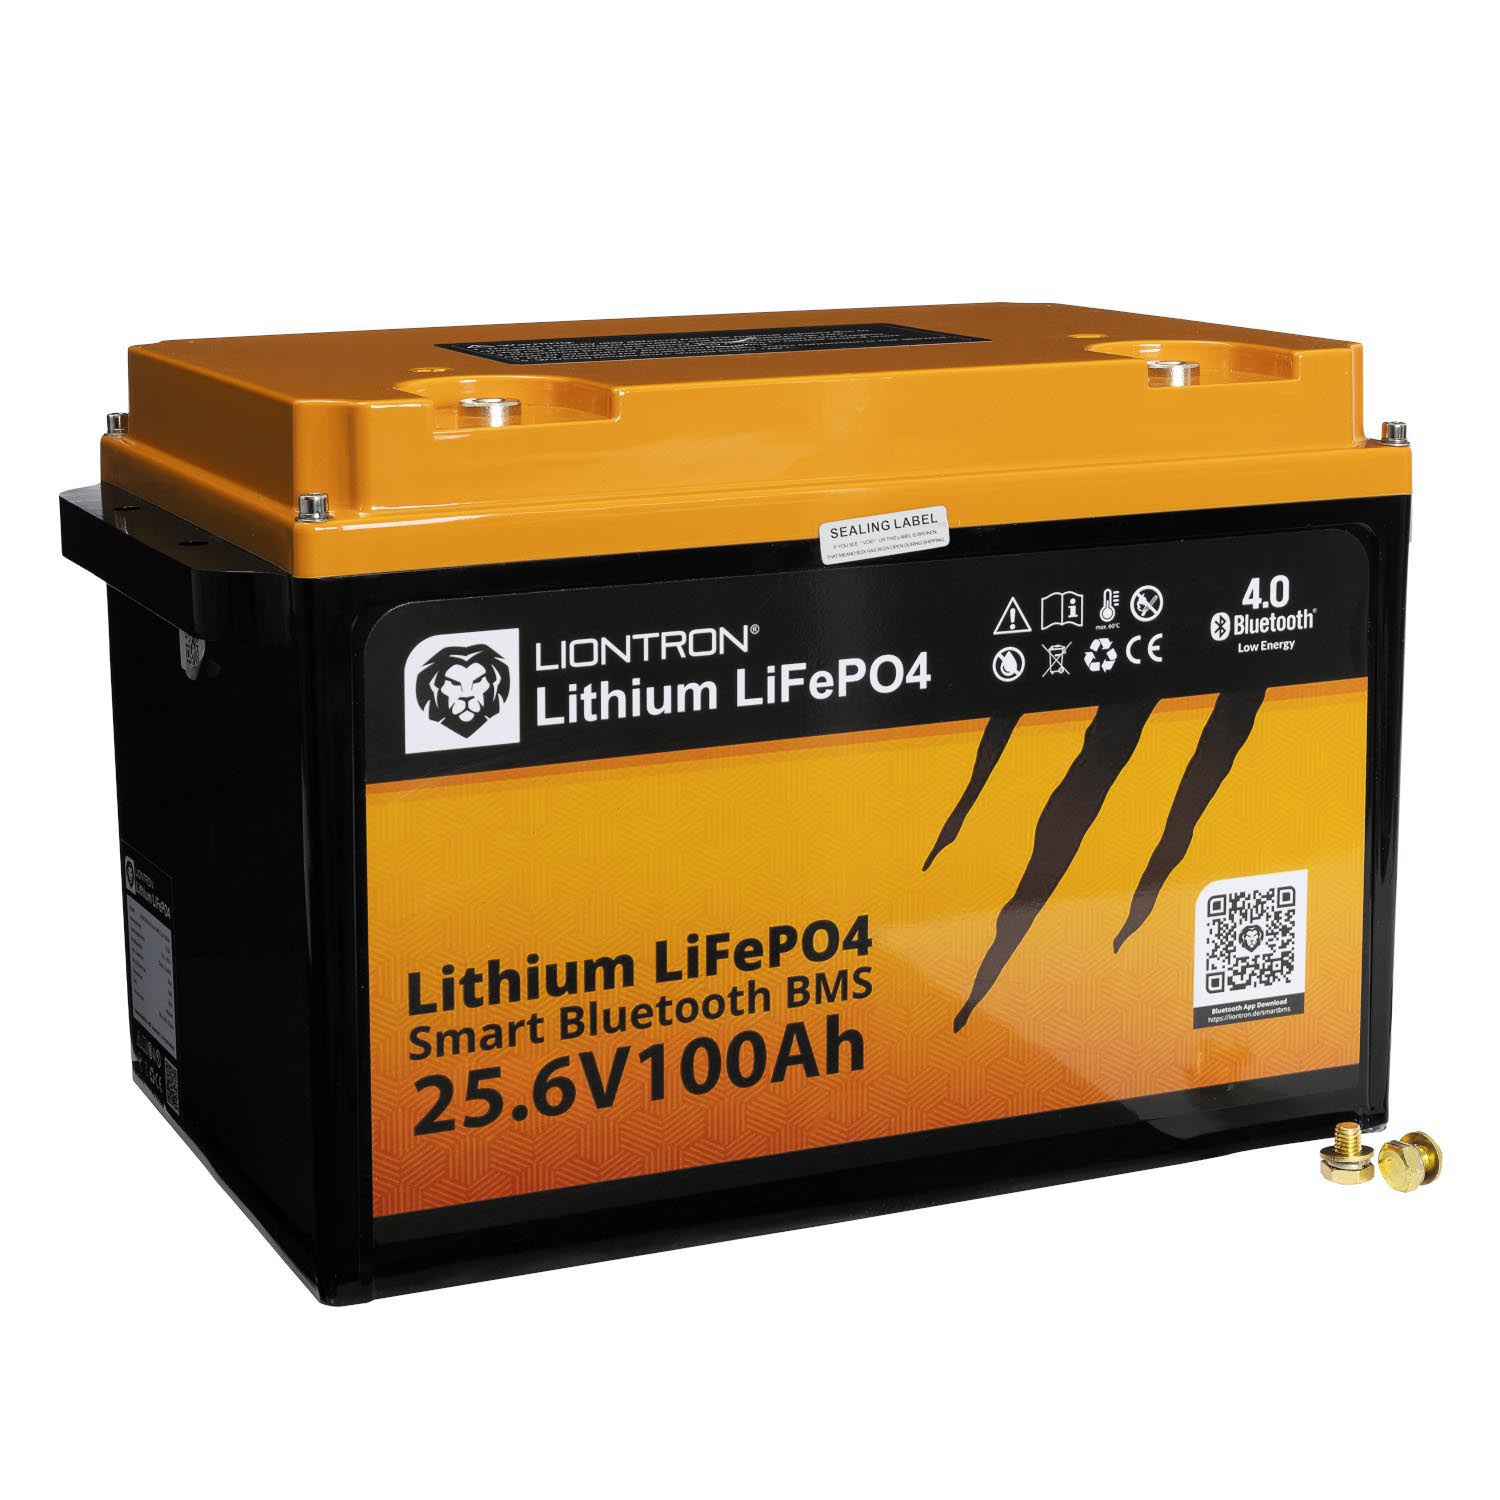 Liontron 100Ah 25,6V LiFePO4 Lithium Batterie BMS Bluetooth mit App Arctic und Marine (USt-befreit nach §12 Abs.3 Nr. 1 S.1 UStG)